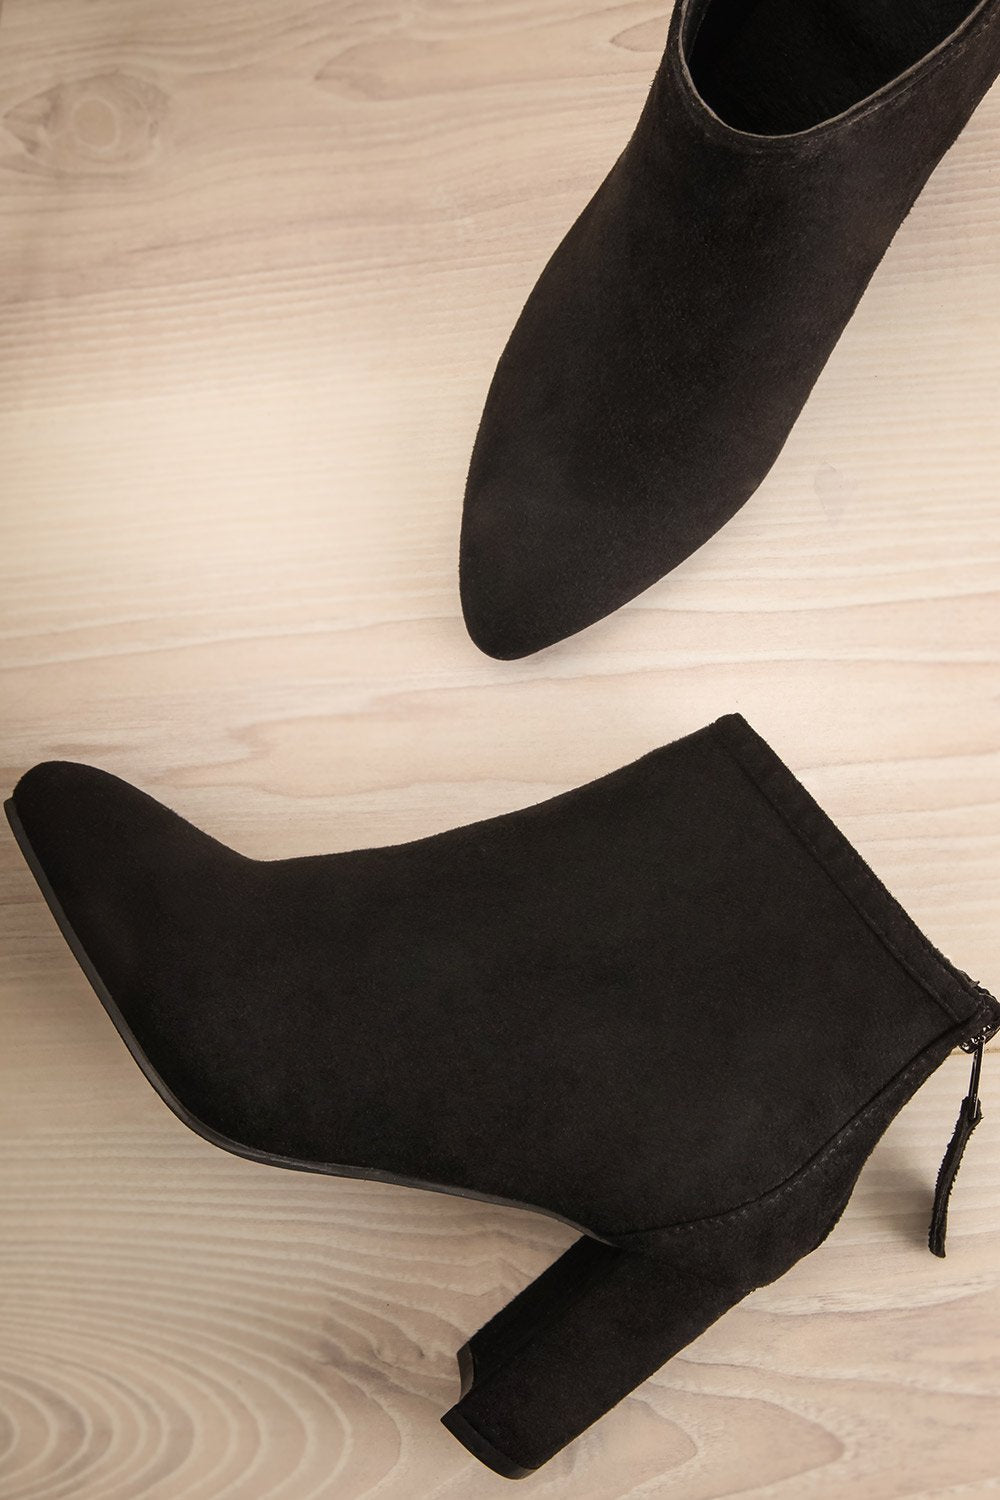 Hérold Black Faux Suede Ankle Boots | La Petite Garçonne 1